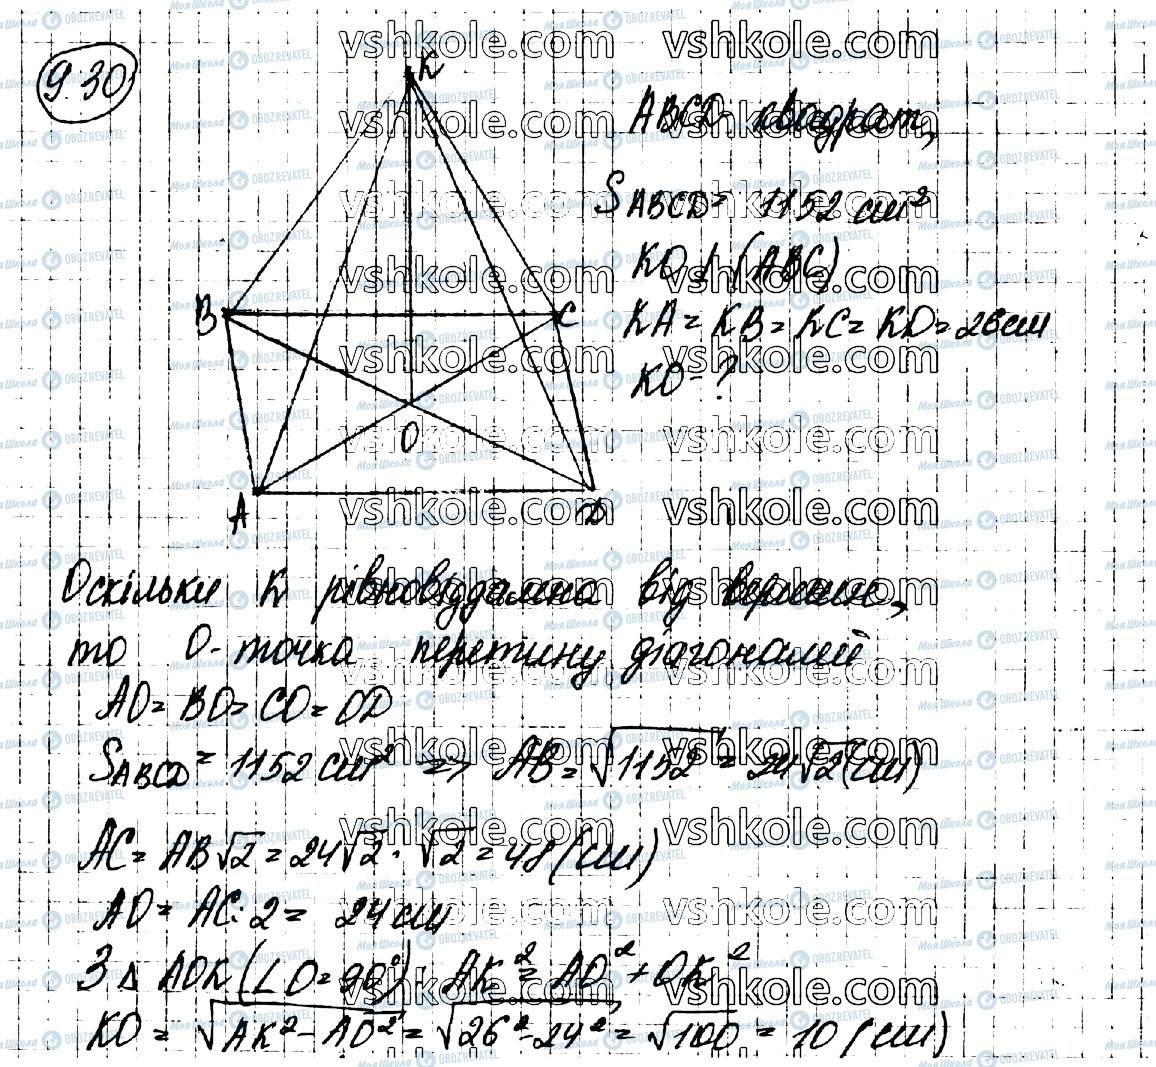 ГДЗ Геометрия 10 класс страница 30